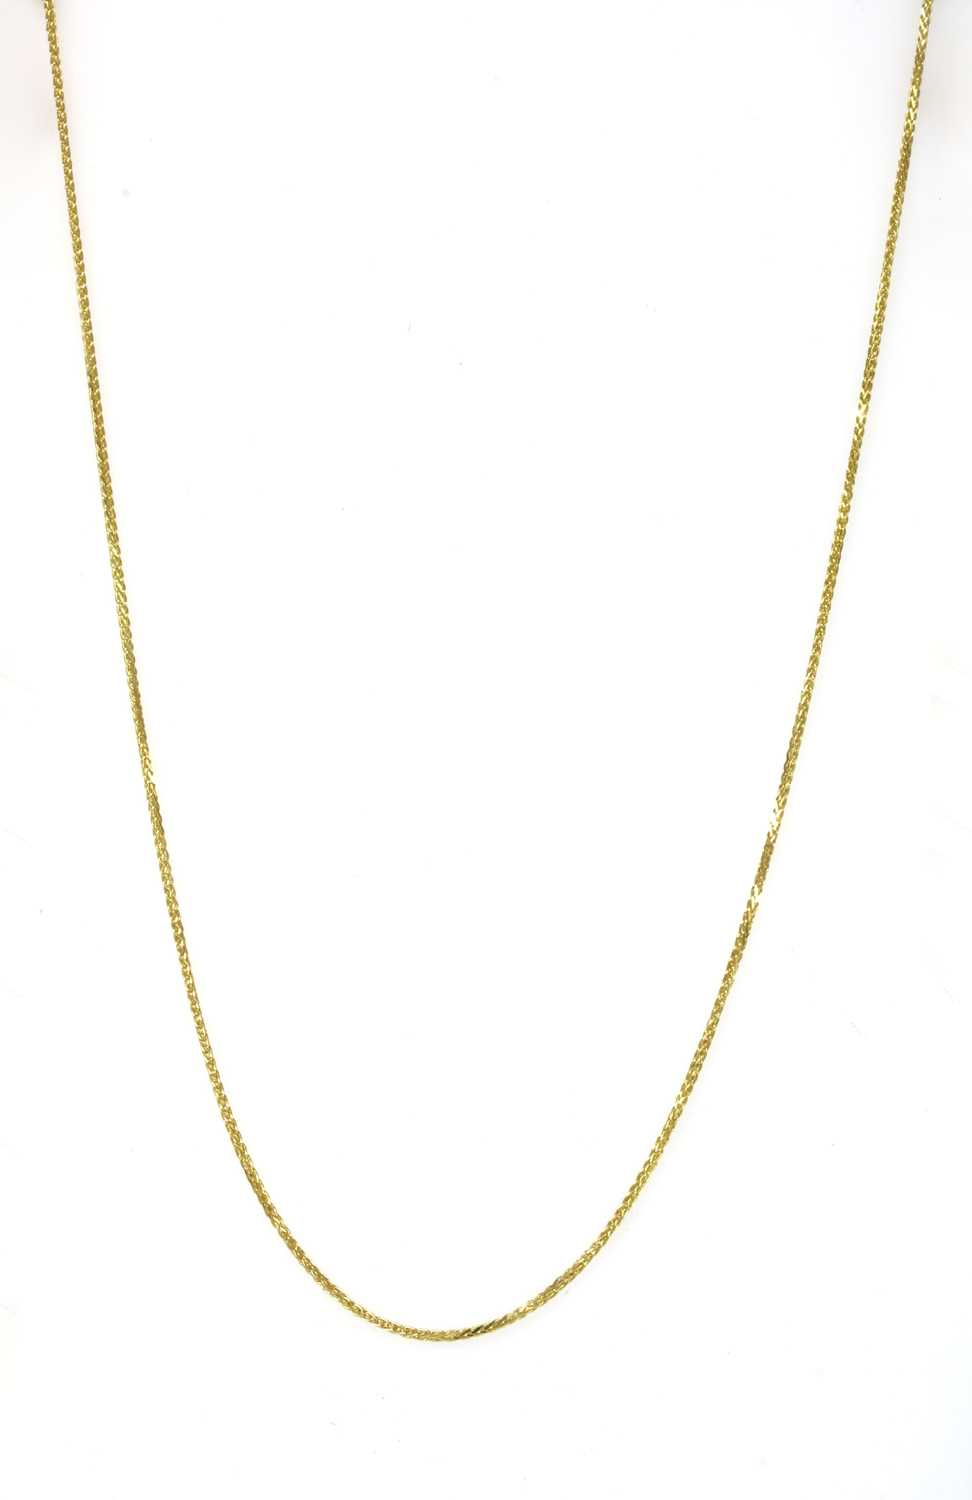 Lot 63 - An 18ct gold spiga chain